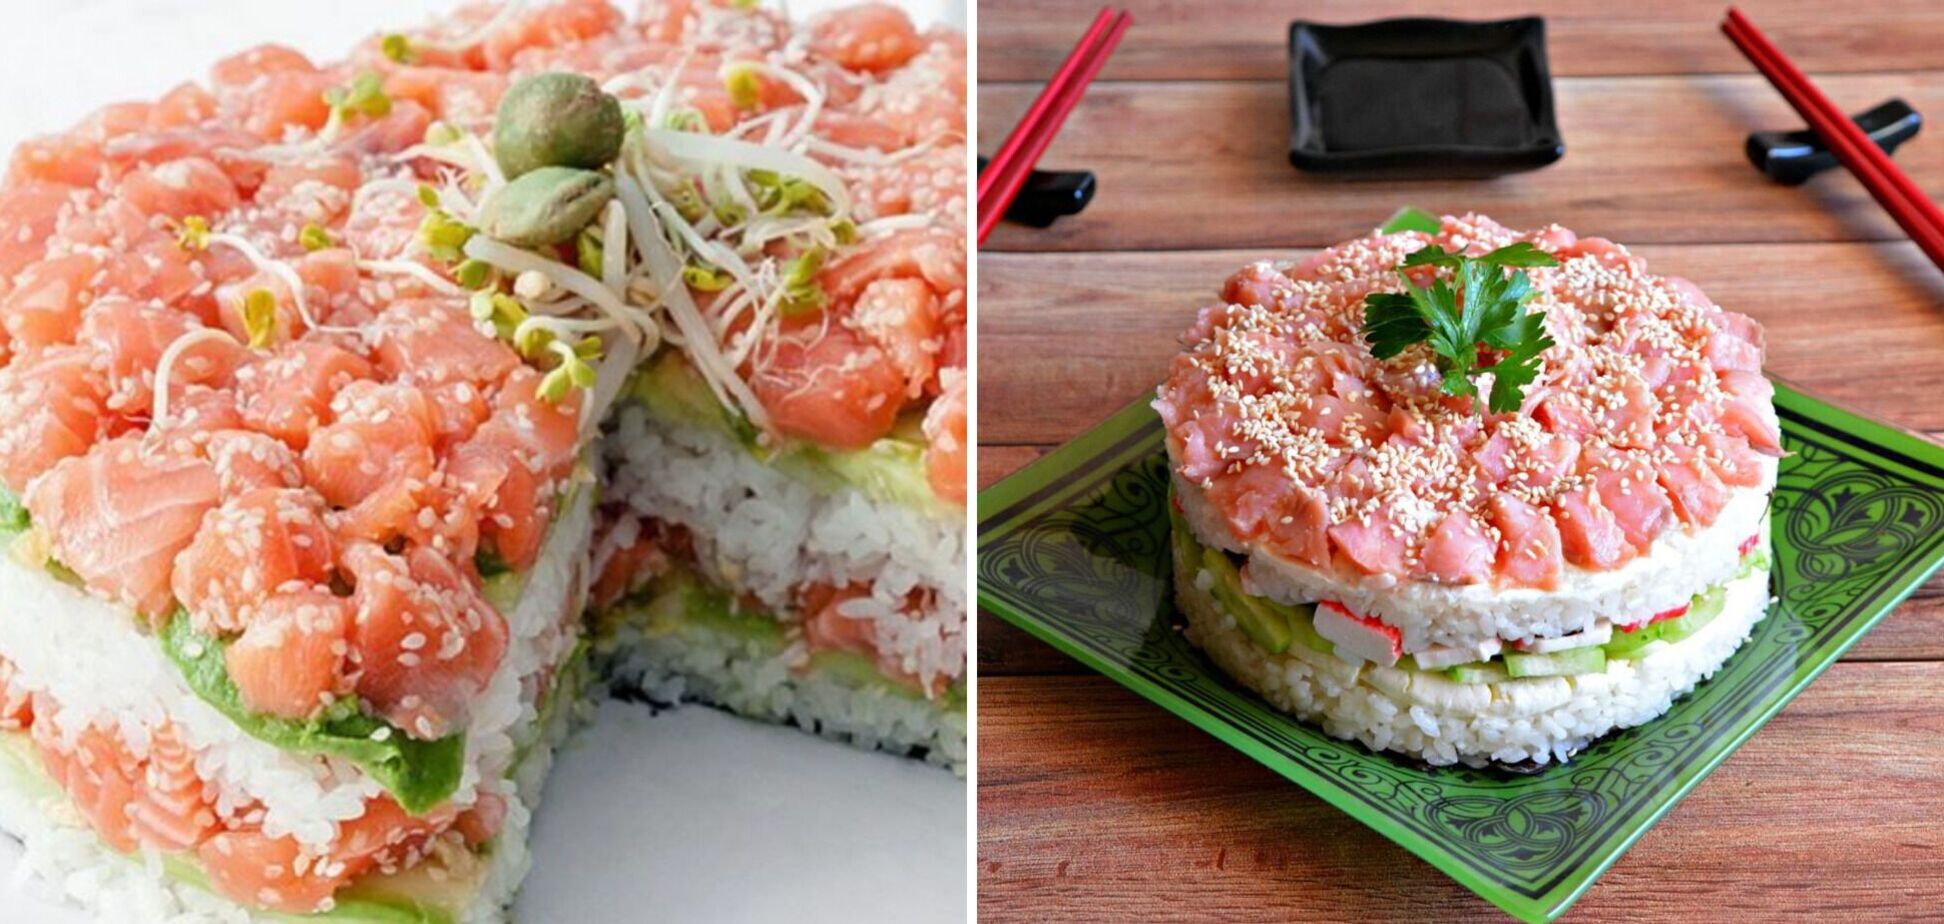 Эффектный суши-салат удивит гостей: интересная идея от фудблогера